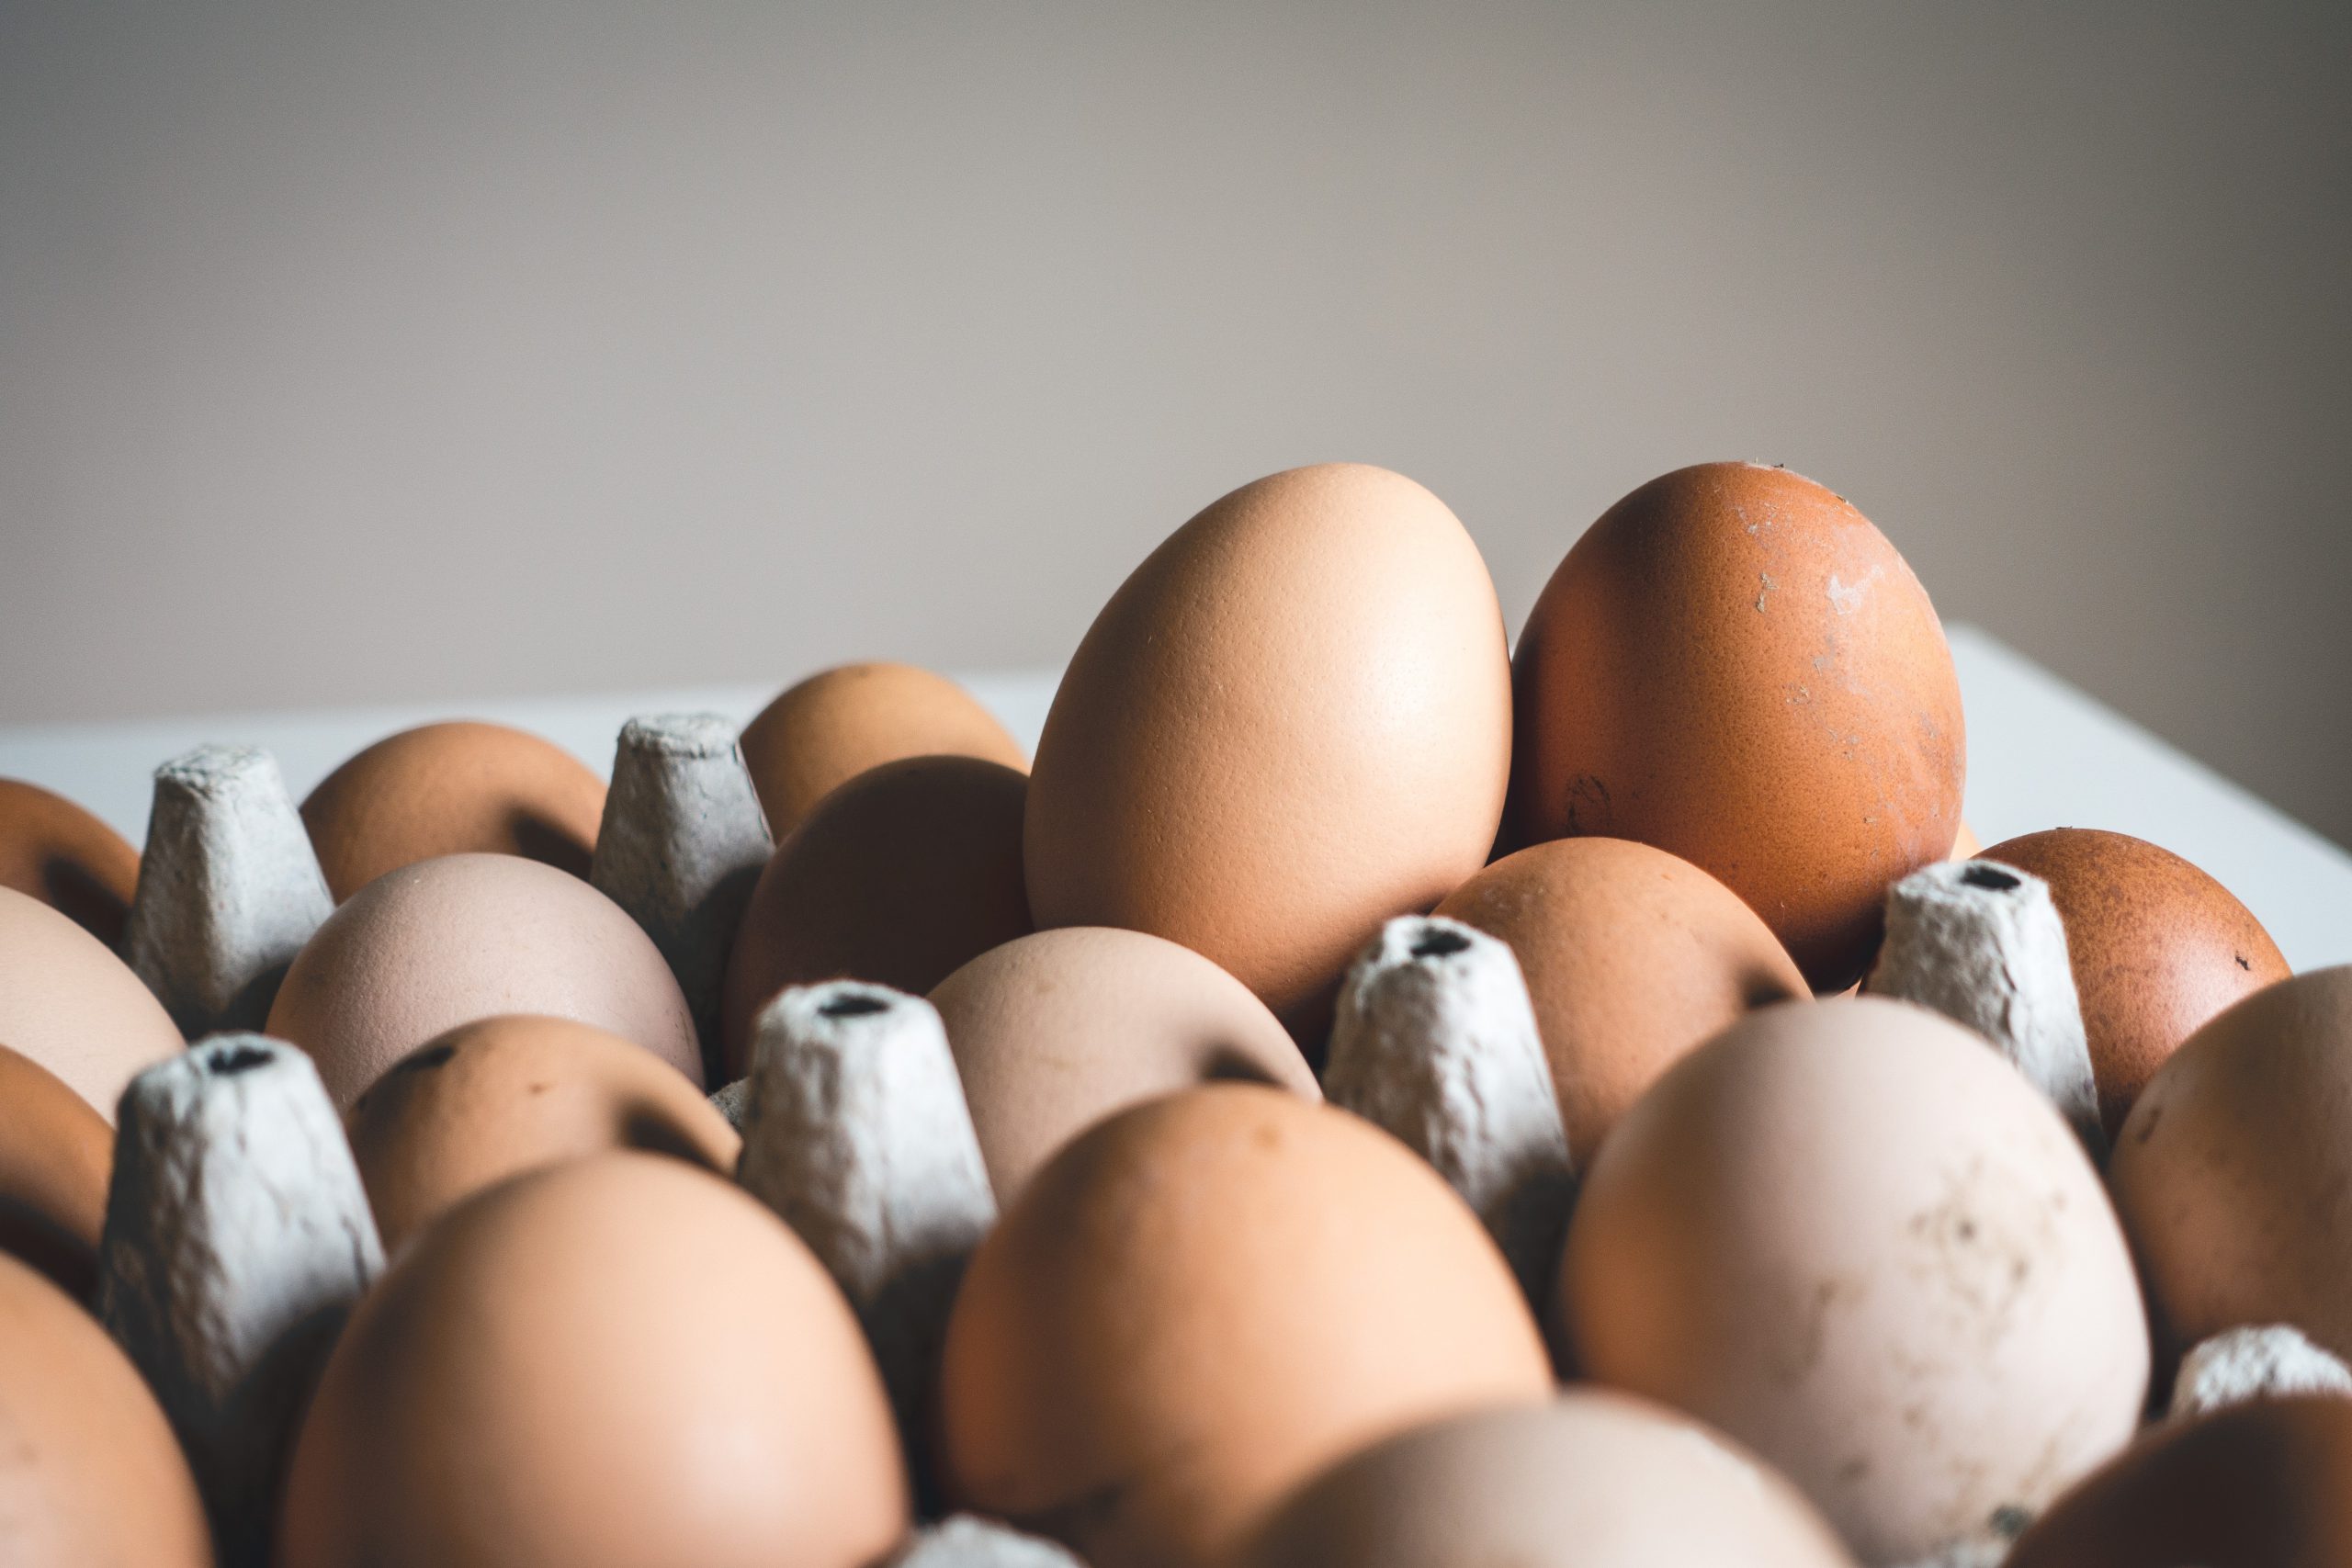 Exportação de ovos entre setembro e janeiro deste ano superam em 137% desempenho de 2020